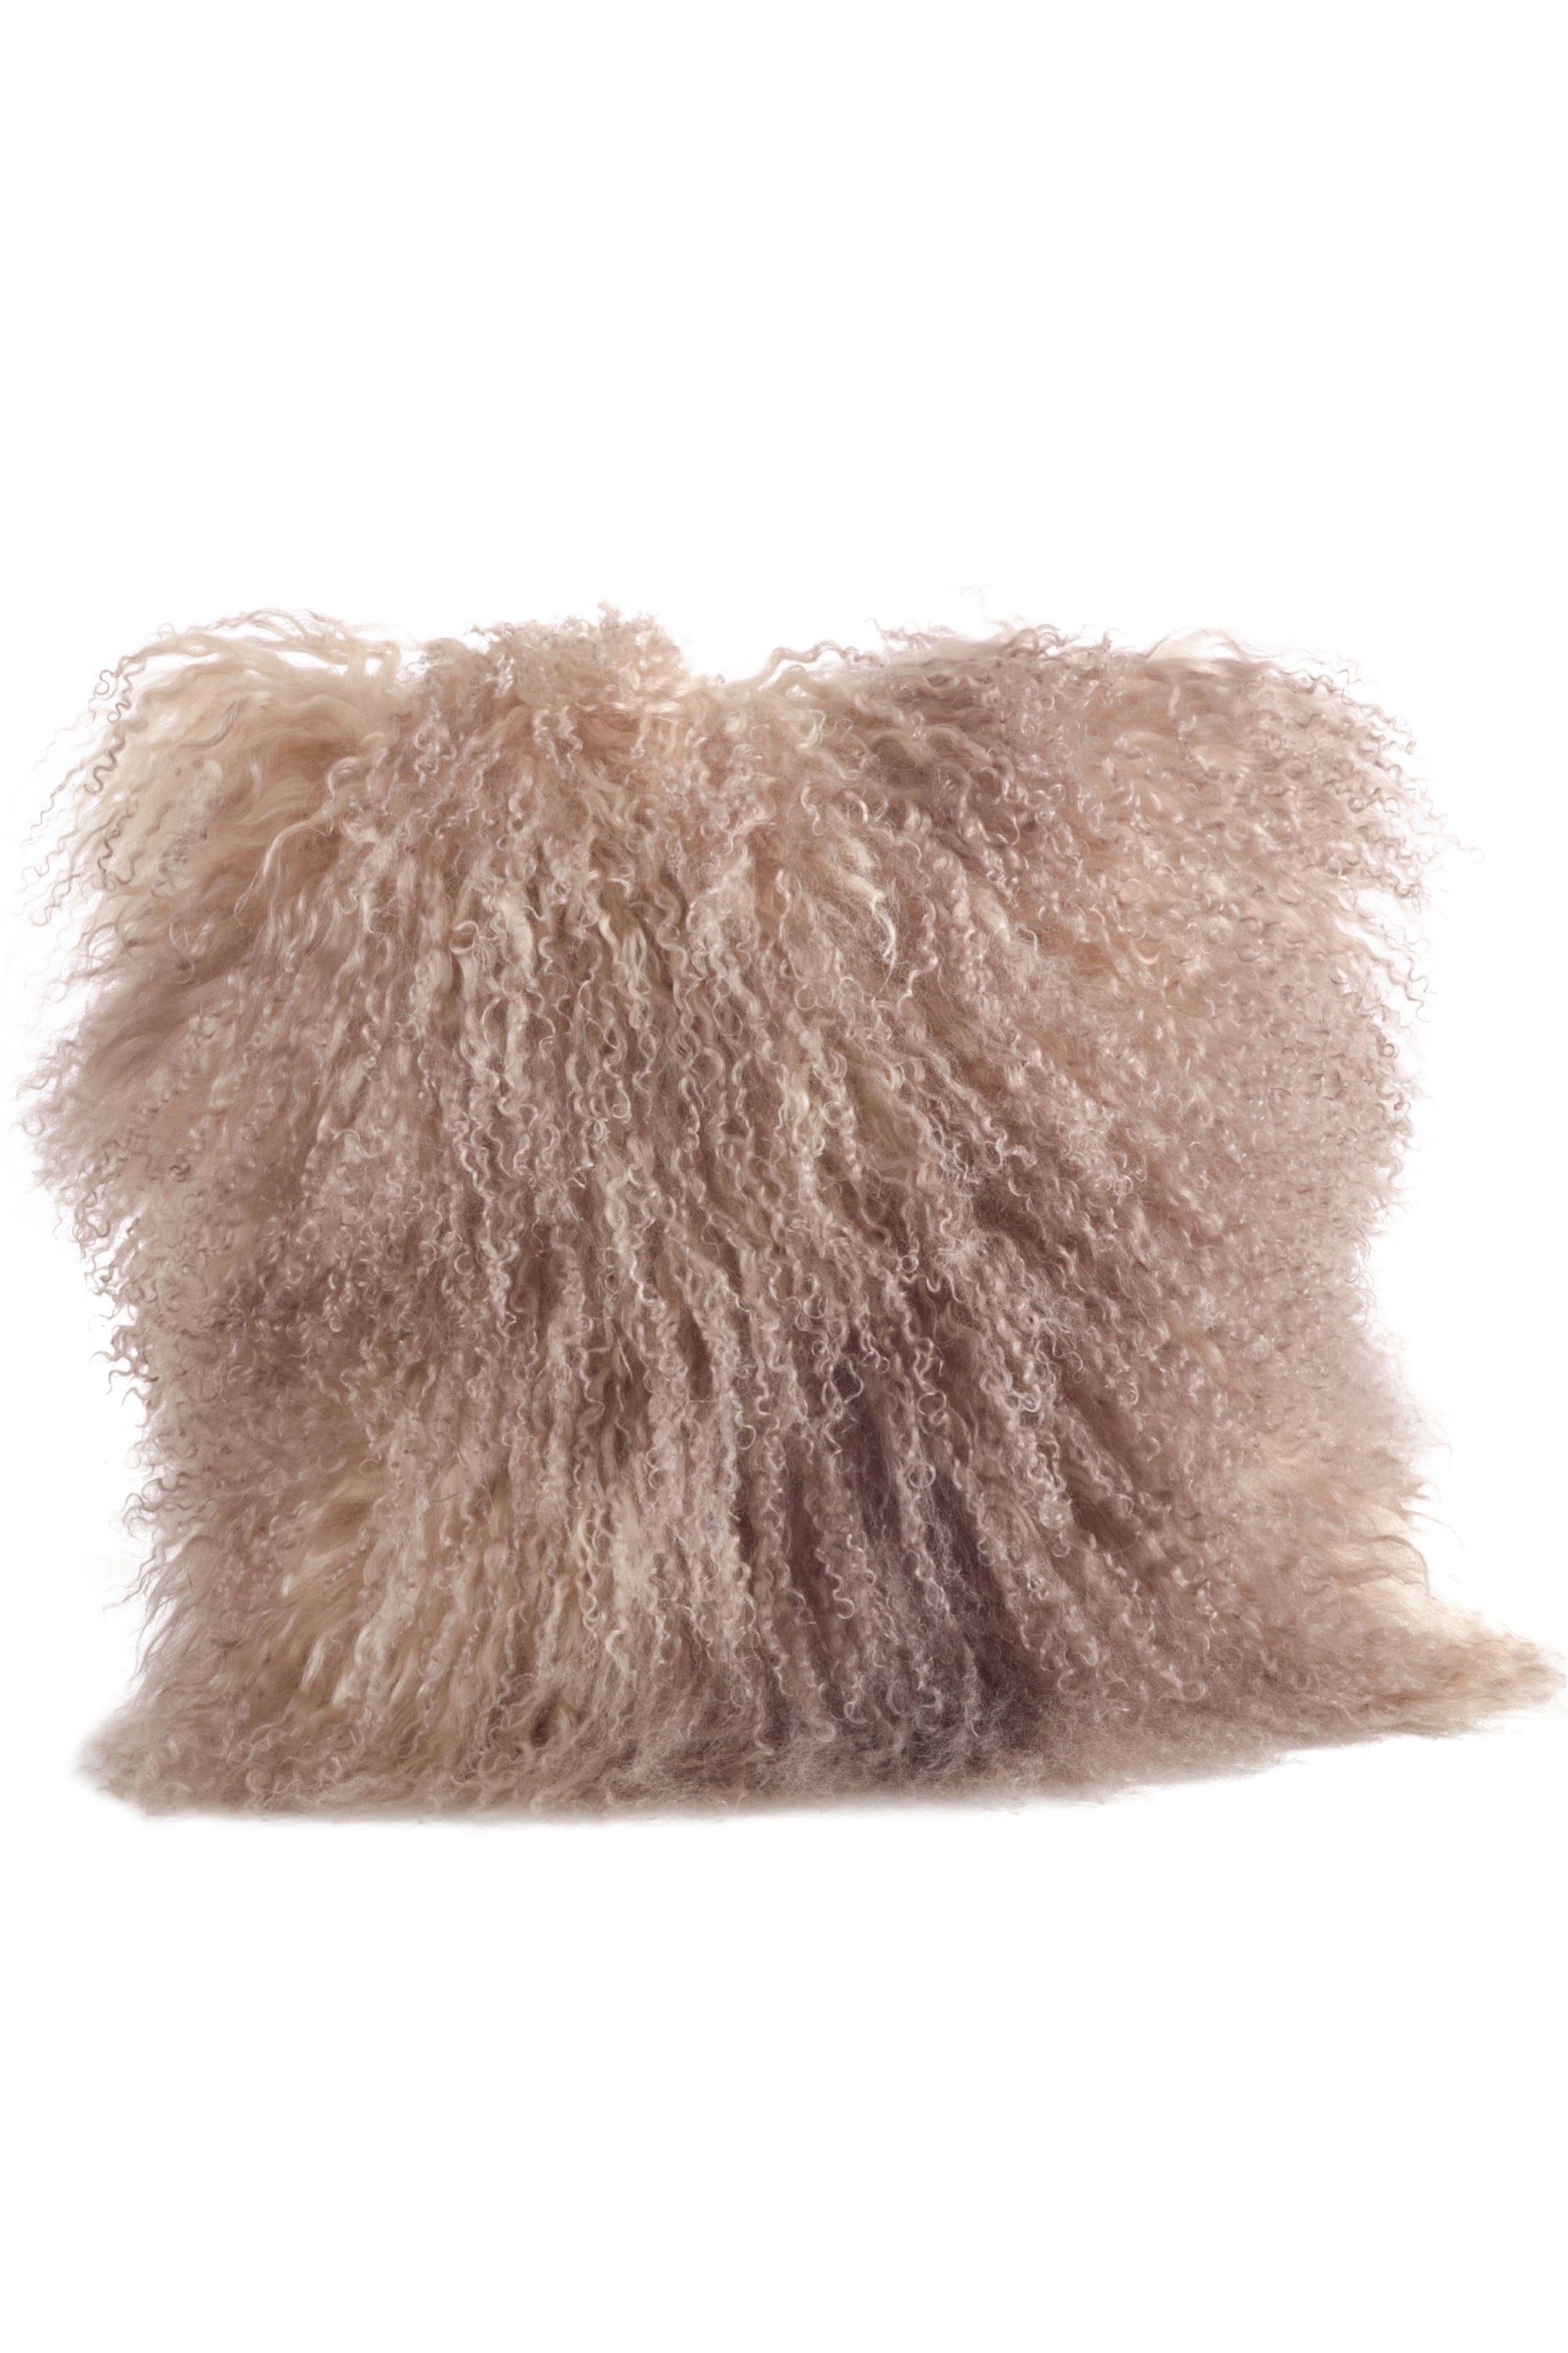 Mongolian Sheep Fur Pillow